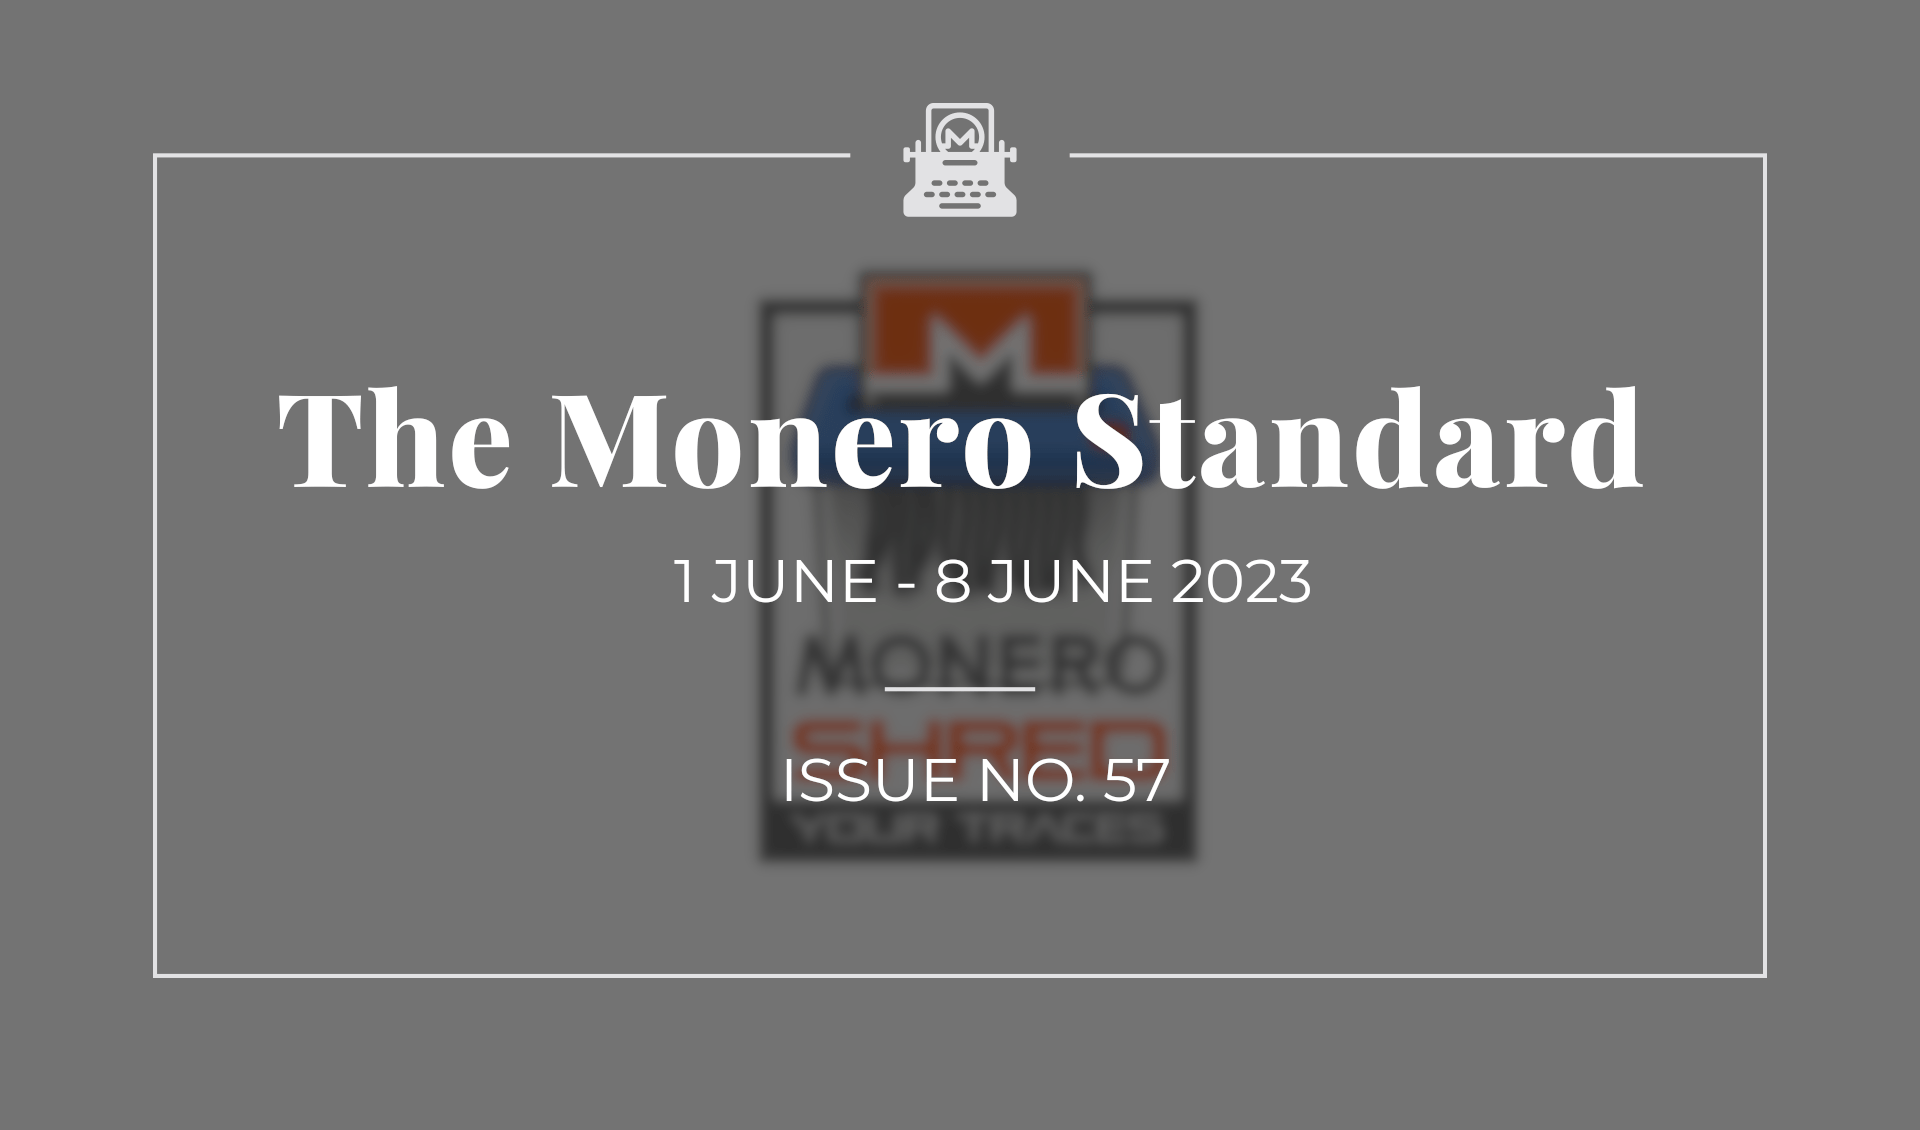 The Monero Standard #57: 1 June 2023 - 8 June 2023